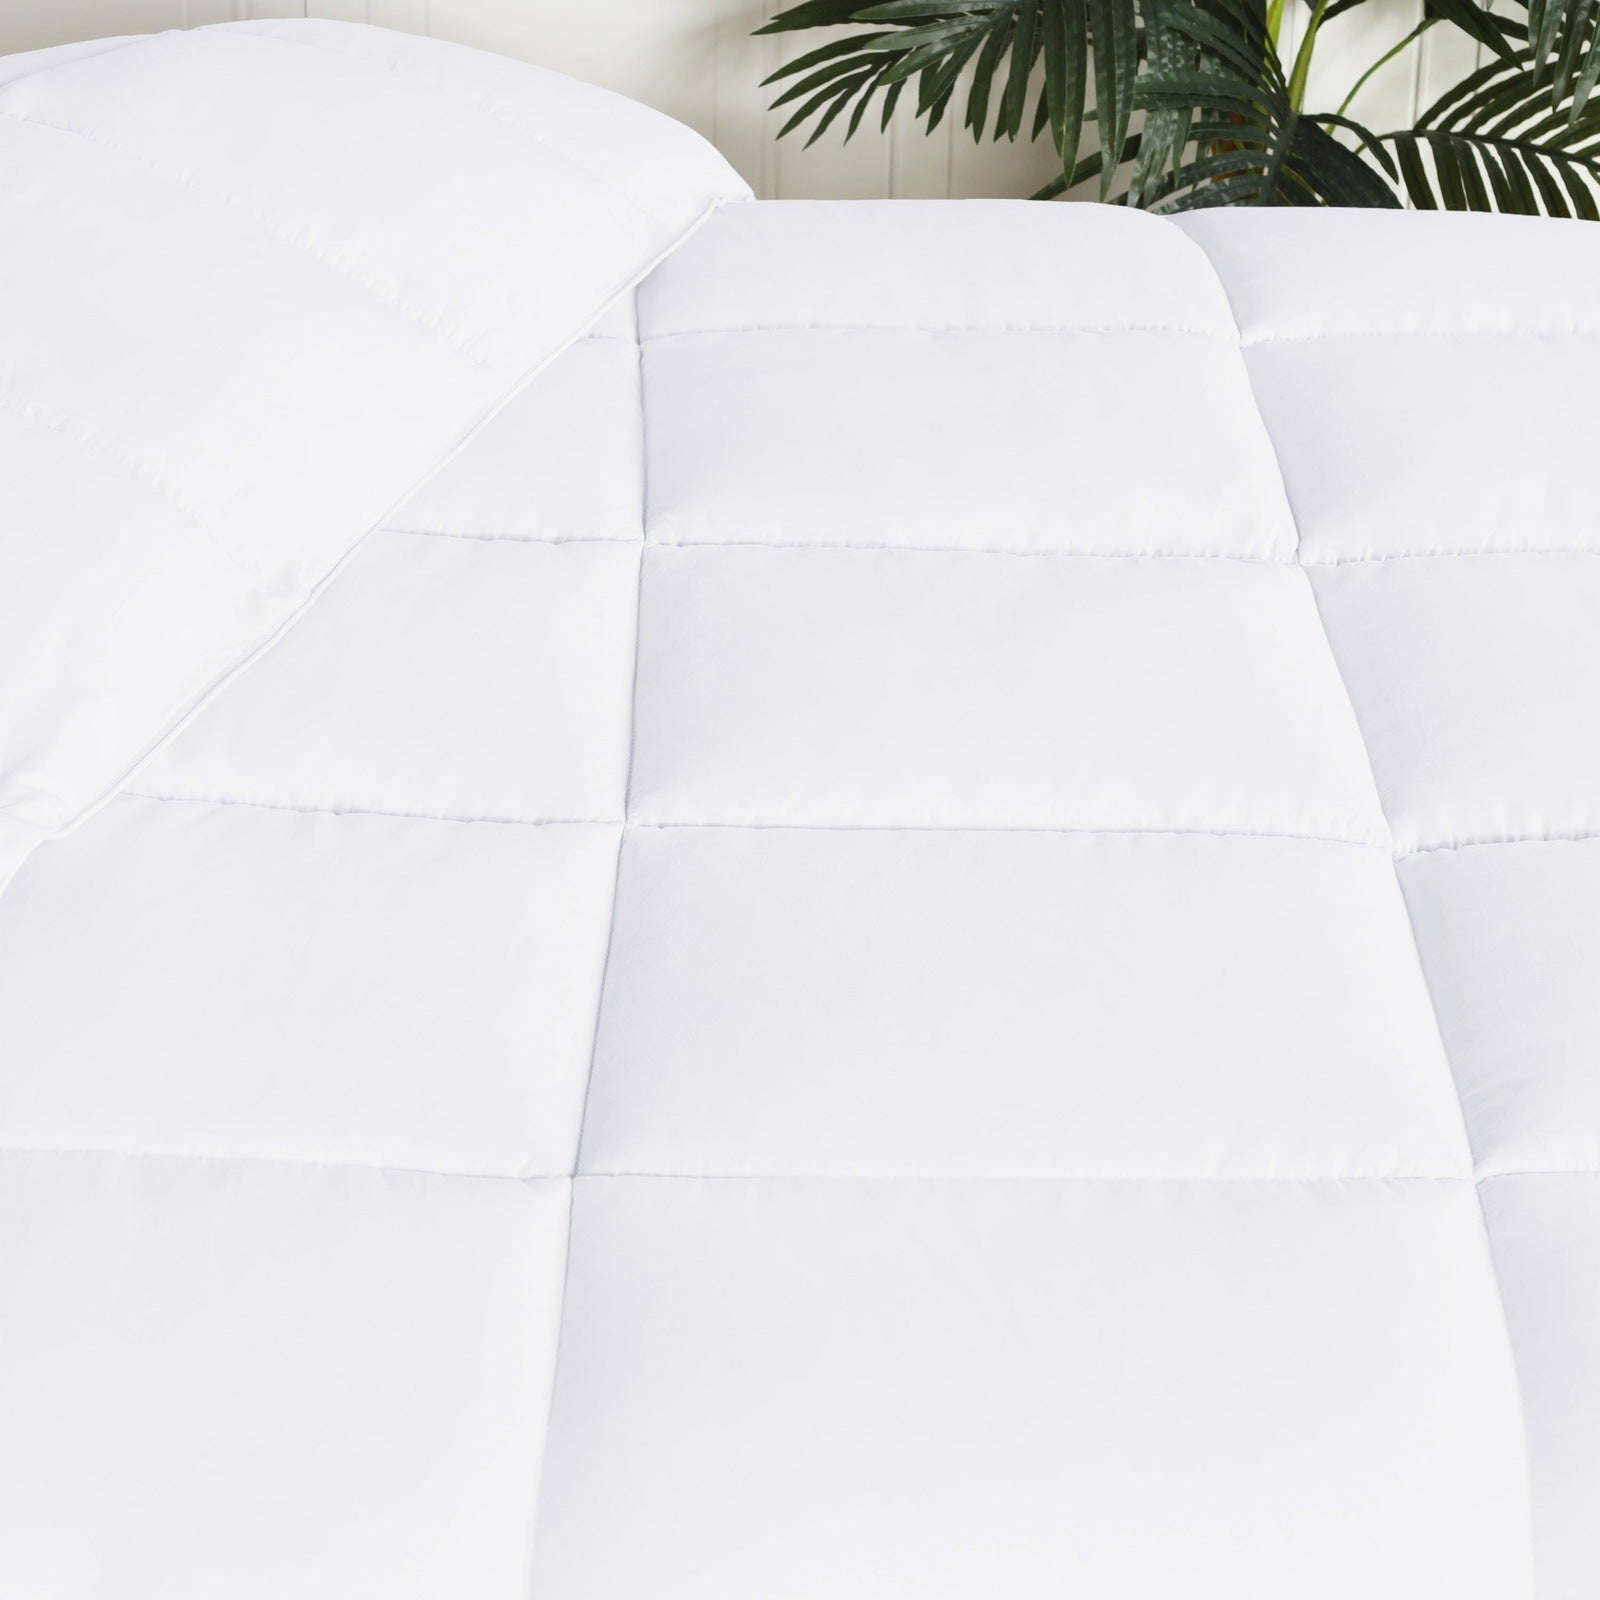  Superior Solid All Season Down Alternative Microfiber Comforter - White